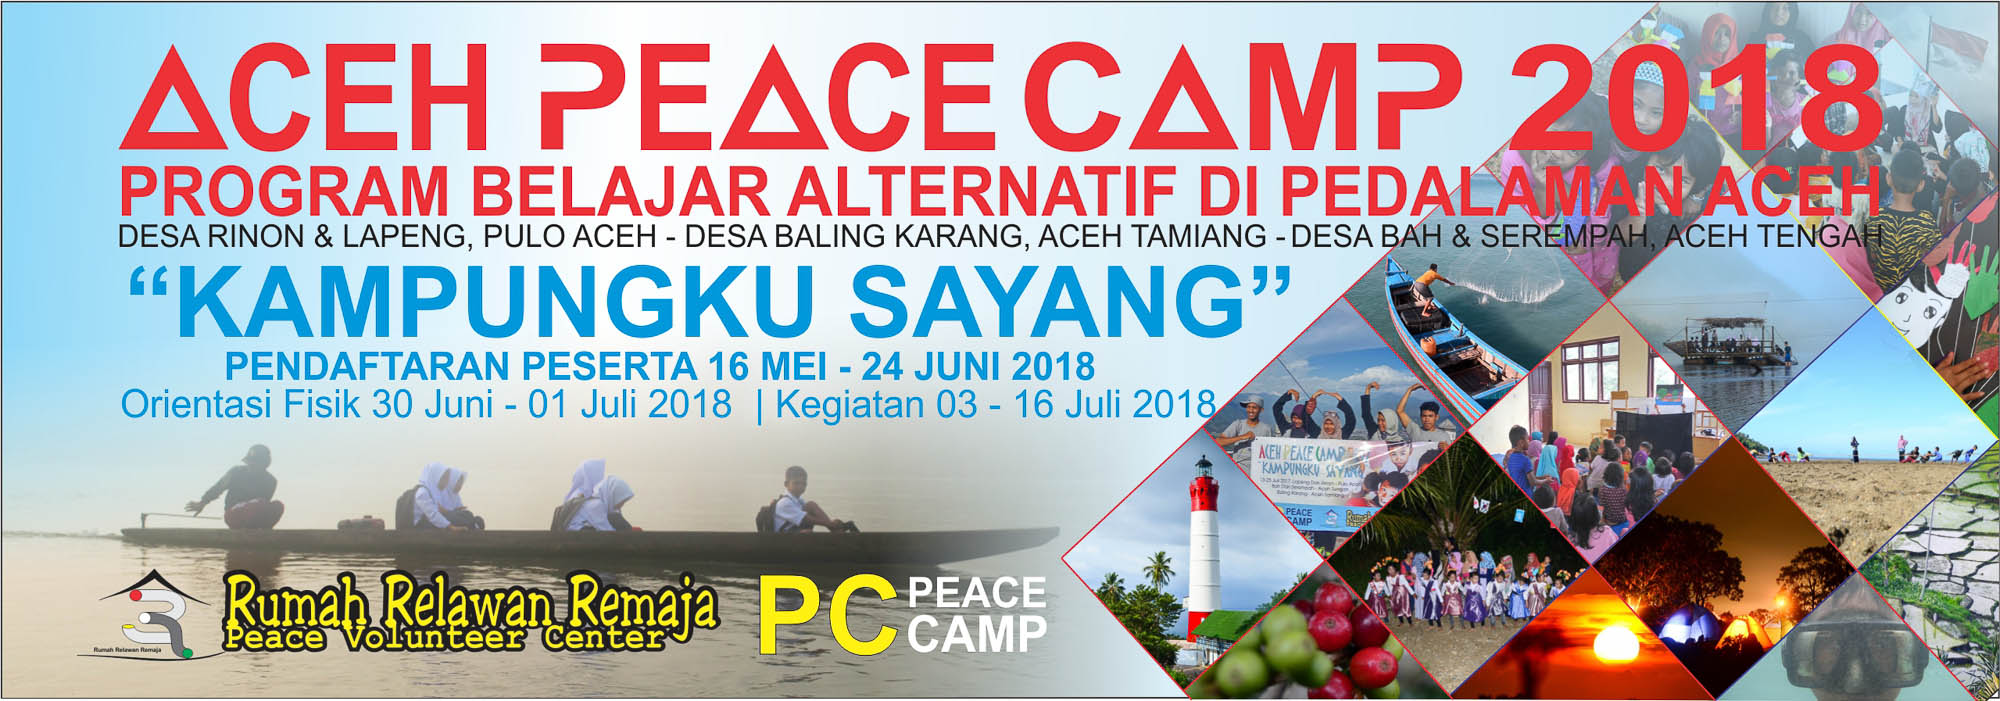 Aceh Peace Camp 2018